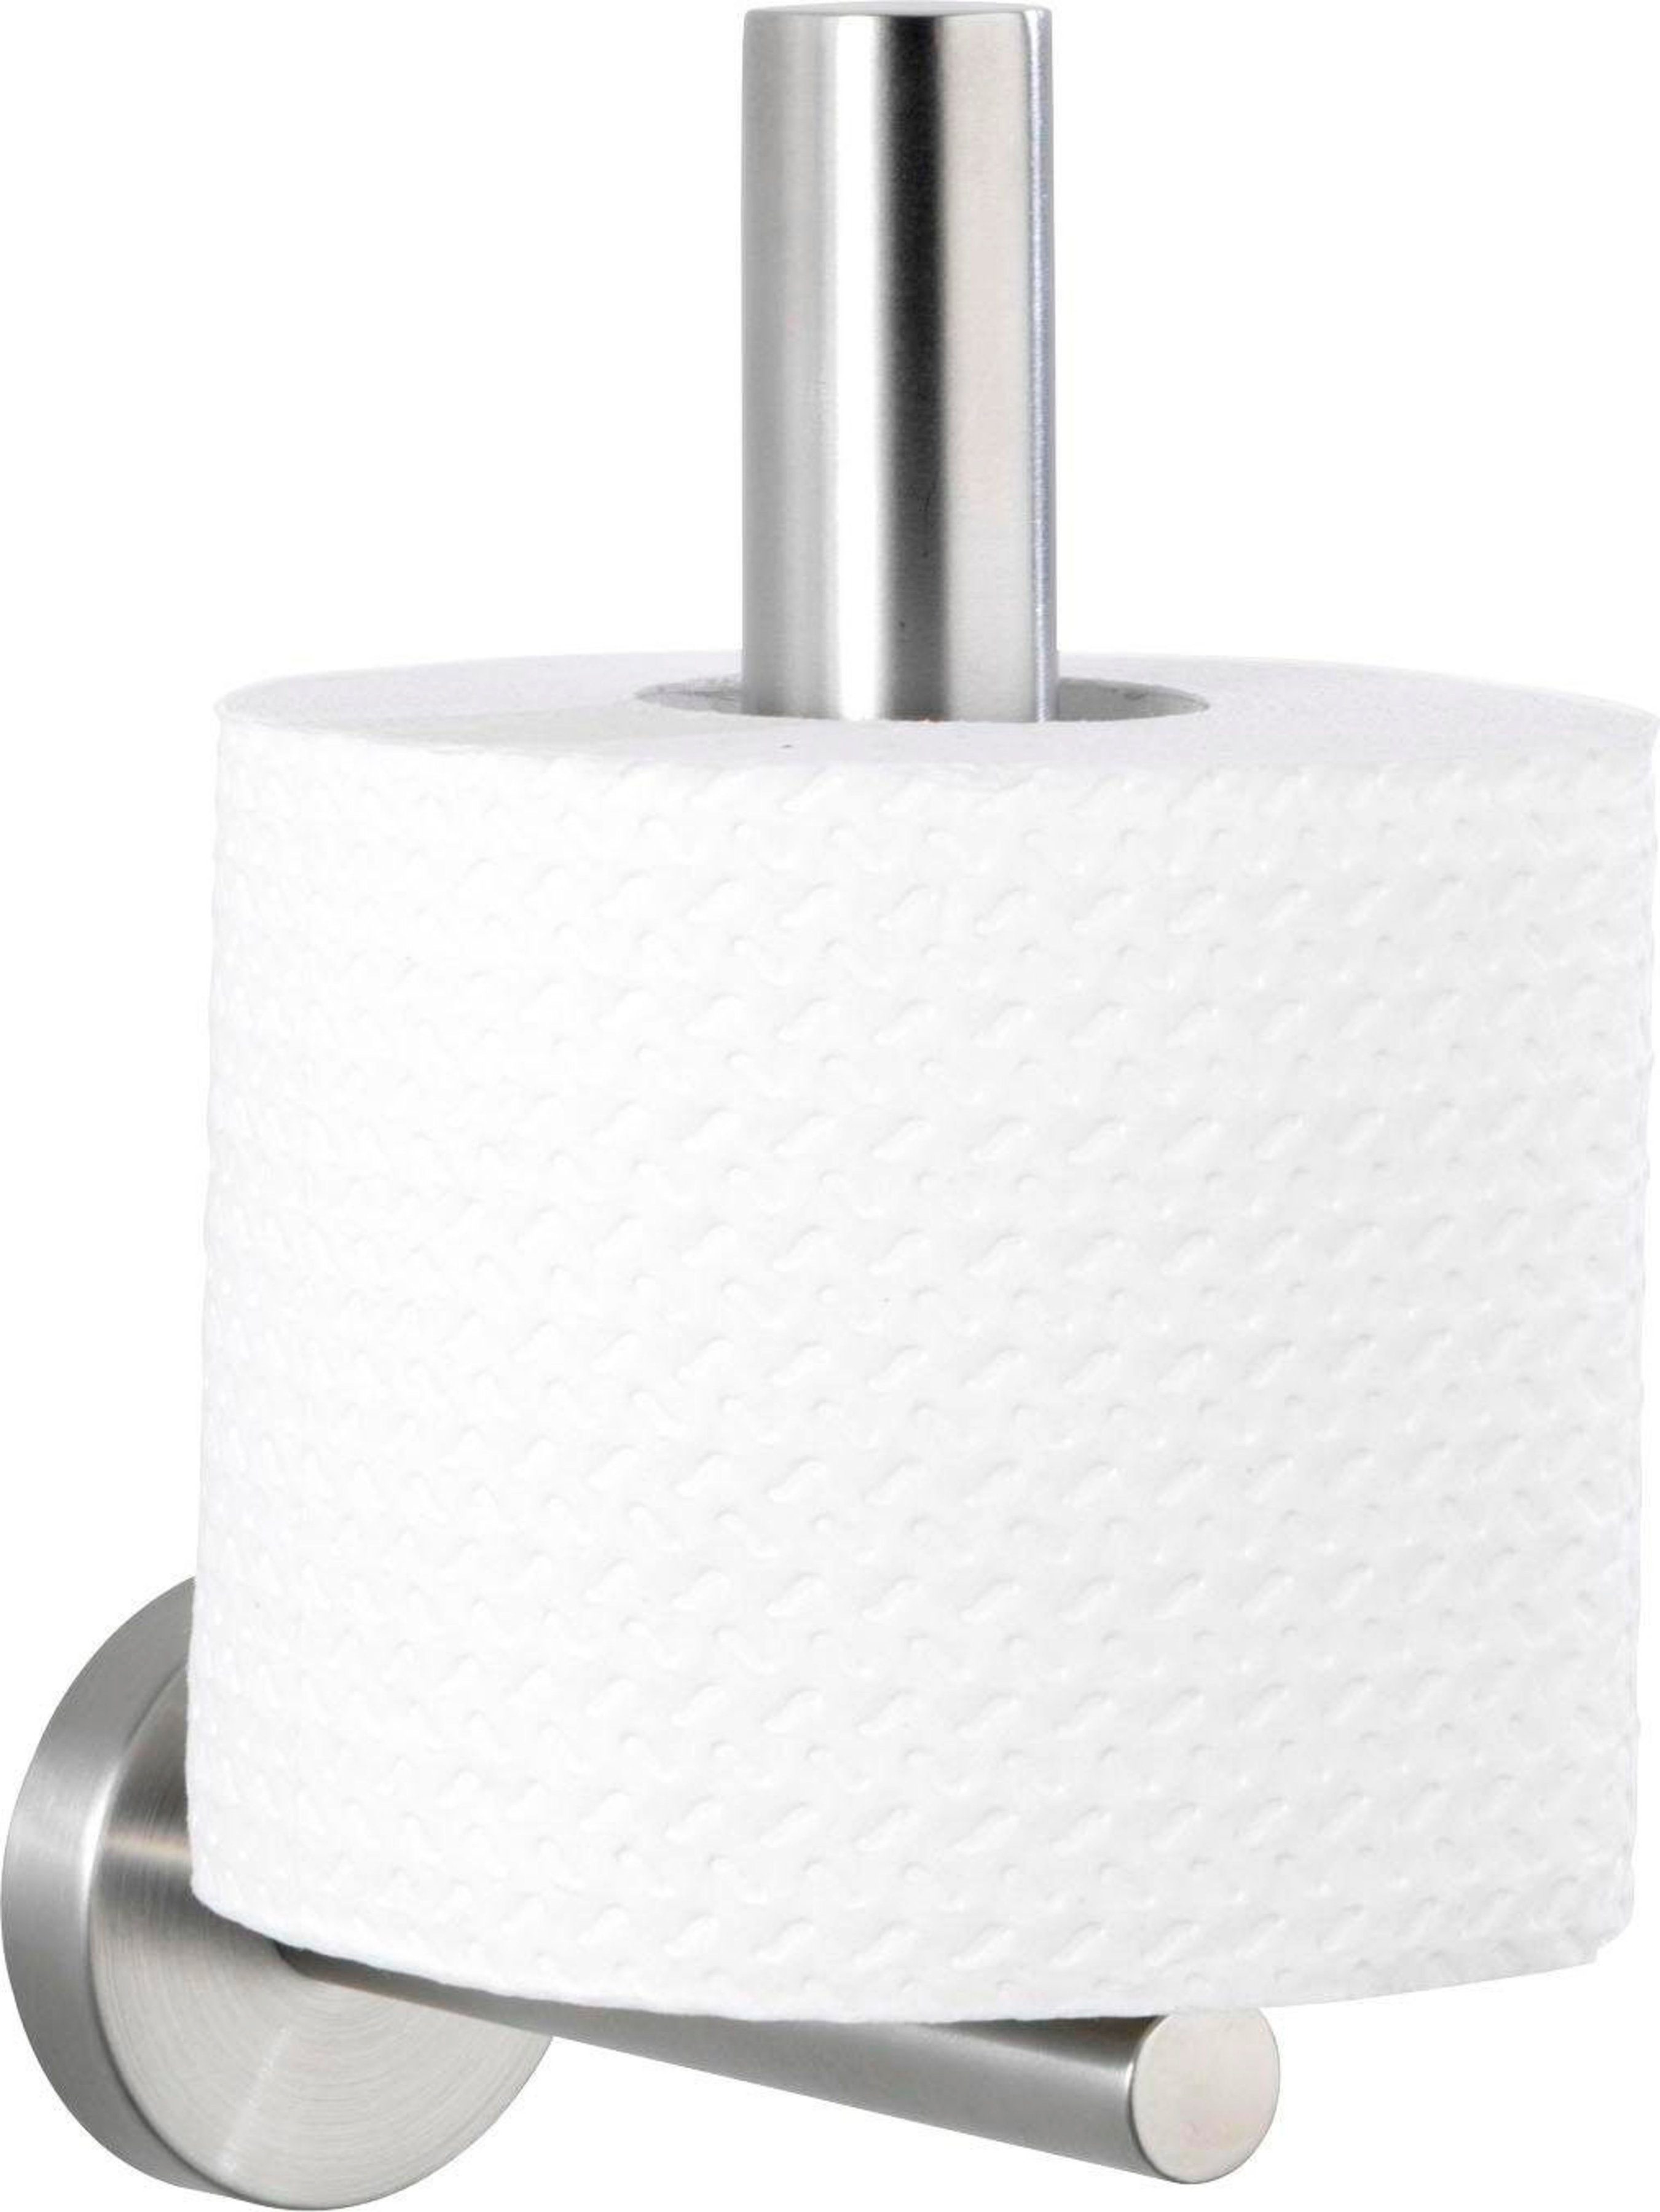 WENKO Toiletten-Ersatzrollenhalter Bosio, Edelstahl, rostfrei | Toilettenpapierhalter